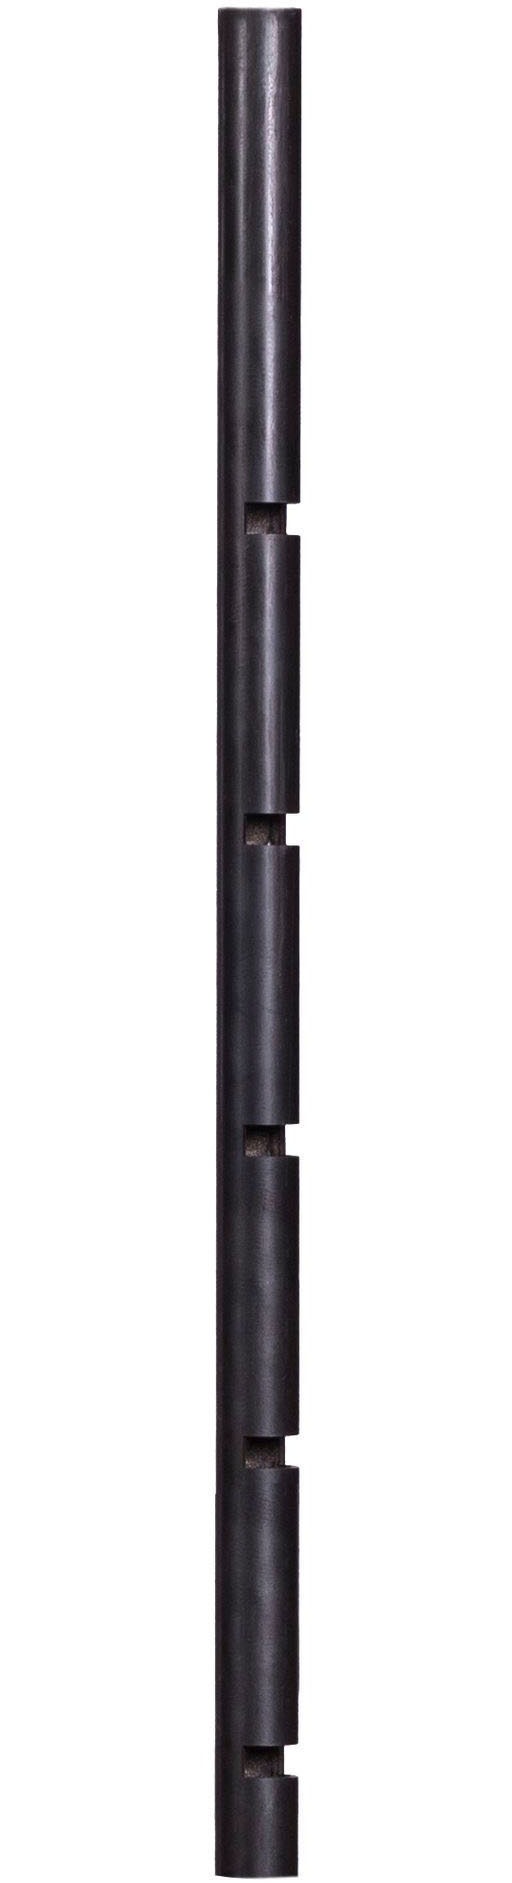 CookKing Feuerschalen-Mast, für Feuerschale Bandito und Montana X, 77 cm Höhe